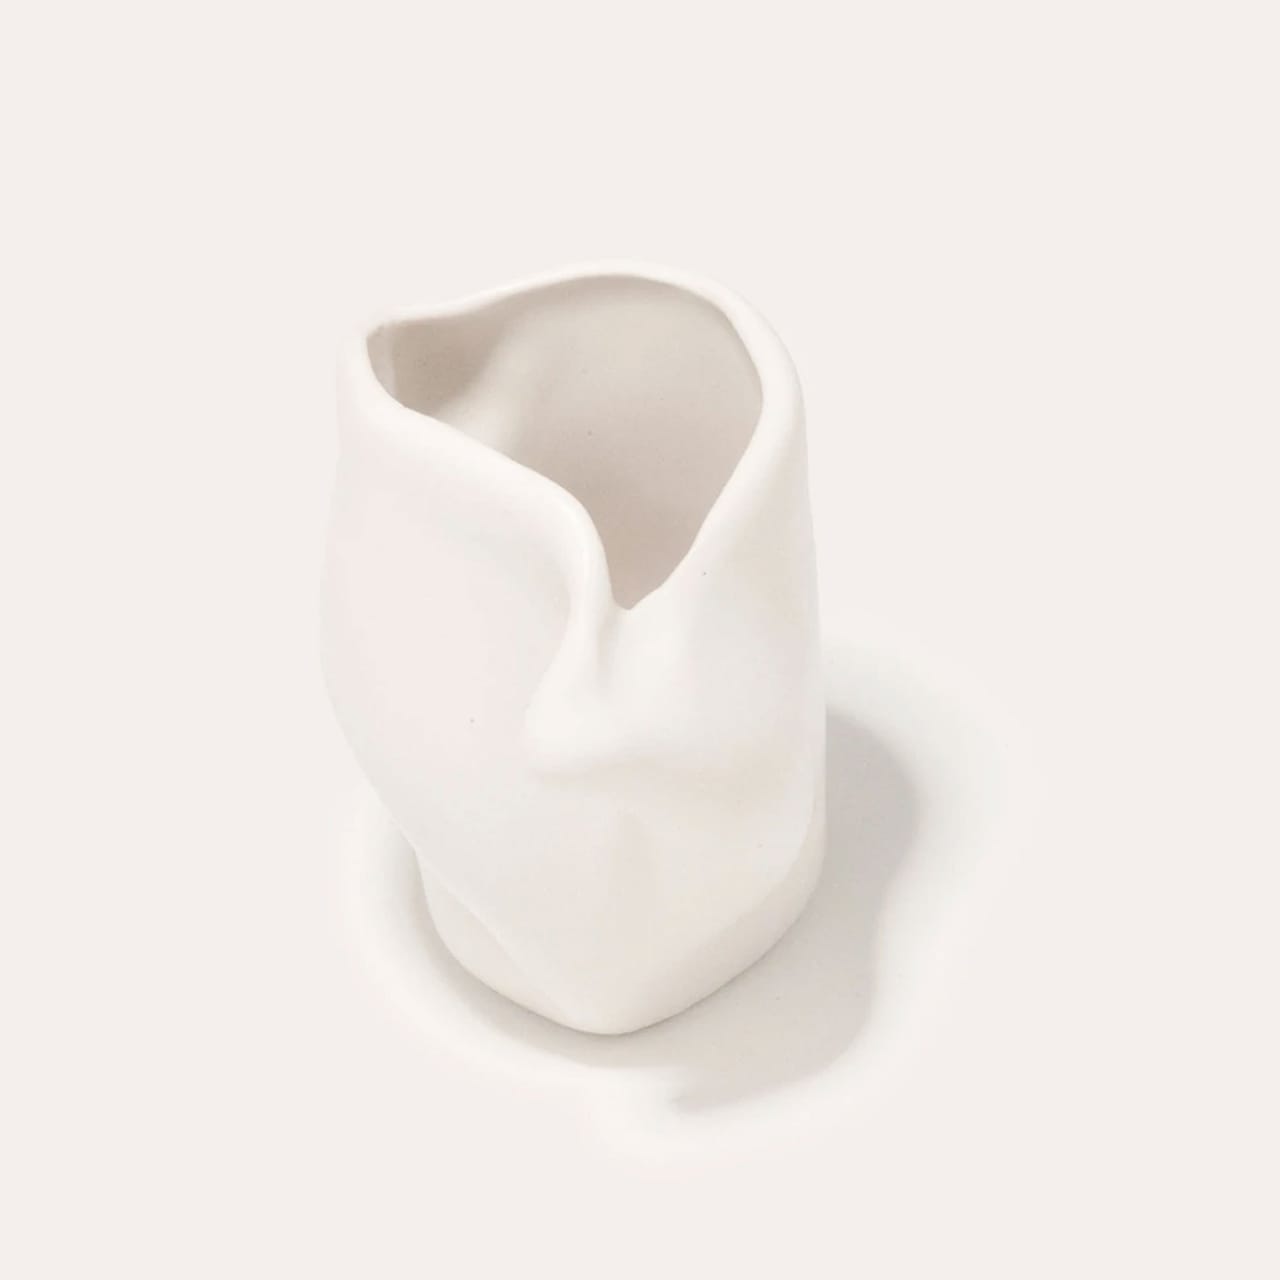 Postures Ceramic Vase